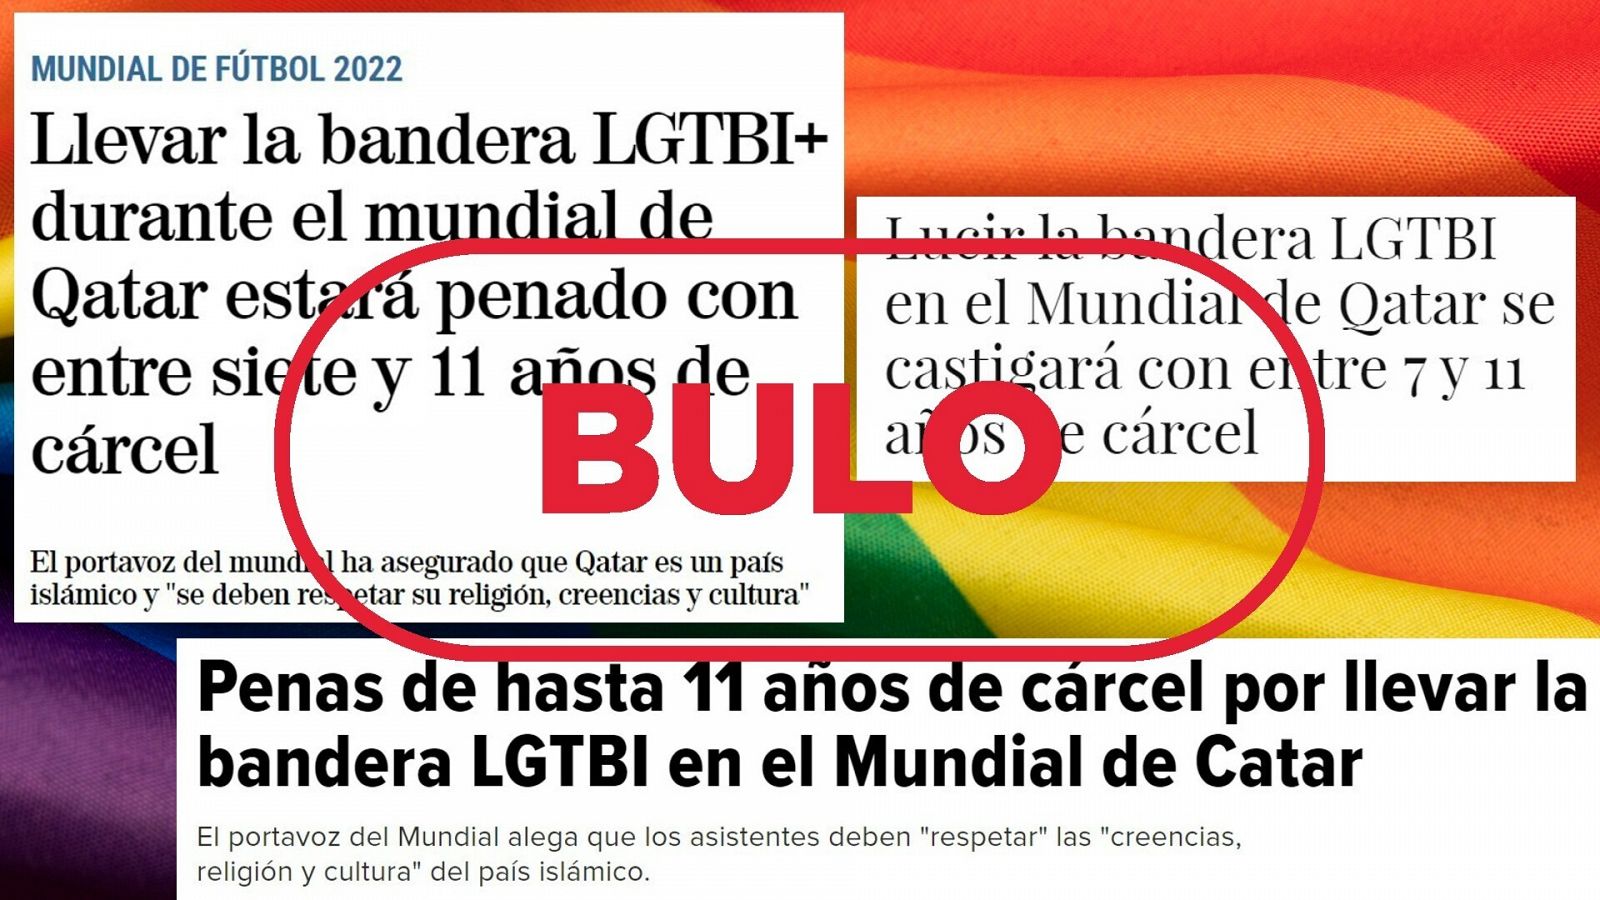  Titulares que difunden el bulo sobre la prohibición de exhibir la bandera LGTBI en el Mundial de Catar con el sello: Bulo